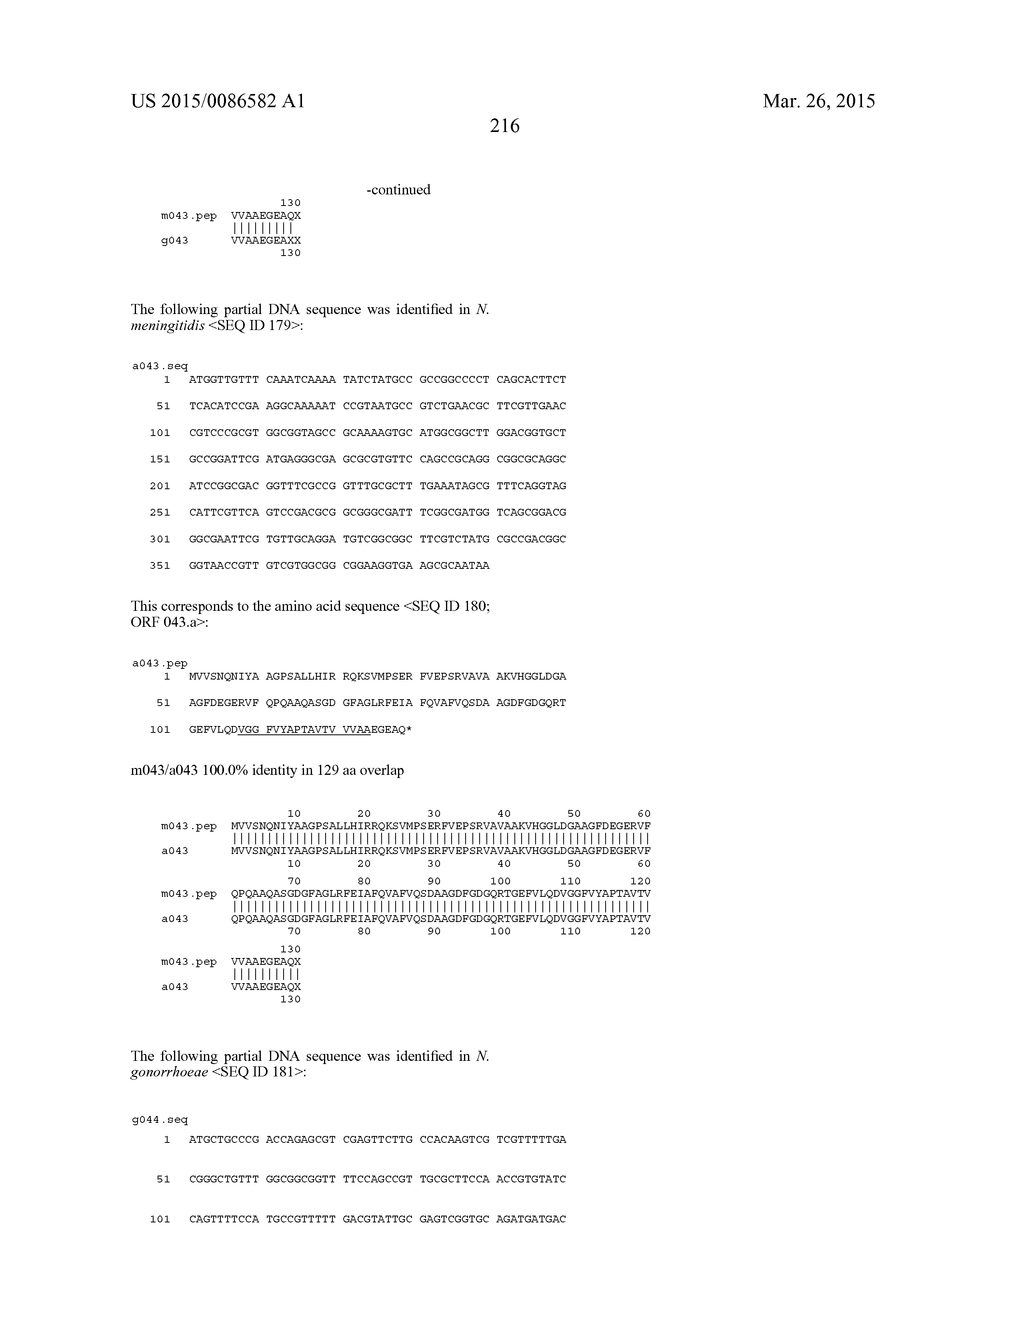 NEISSERIA MENINGITIDIS ANTIGENS AND COMPOSITIONS - diagram, schematic, and image 248